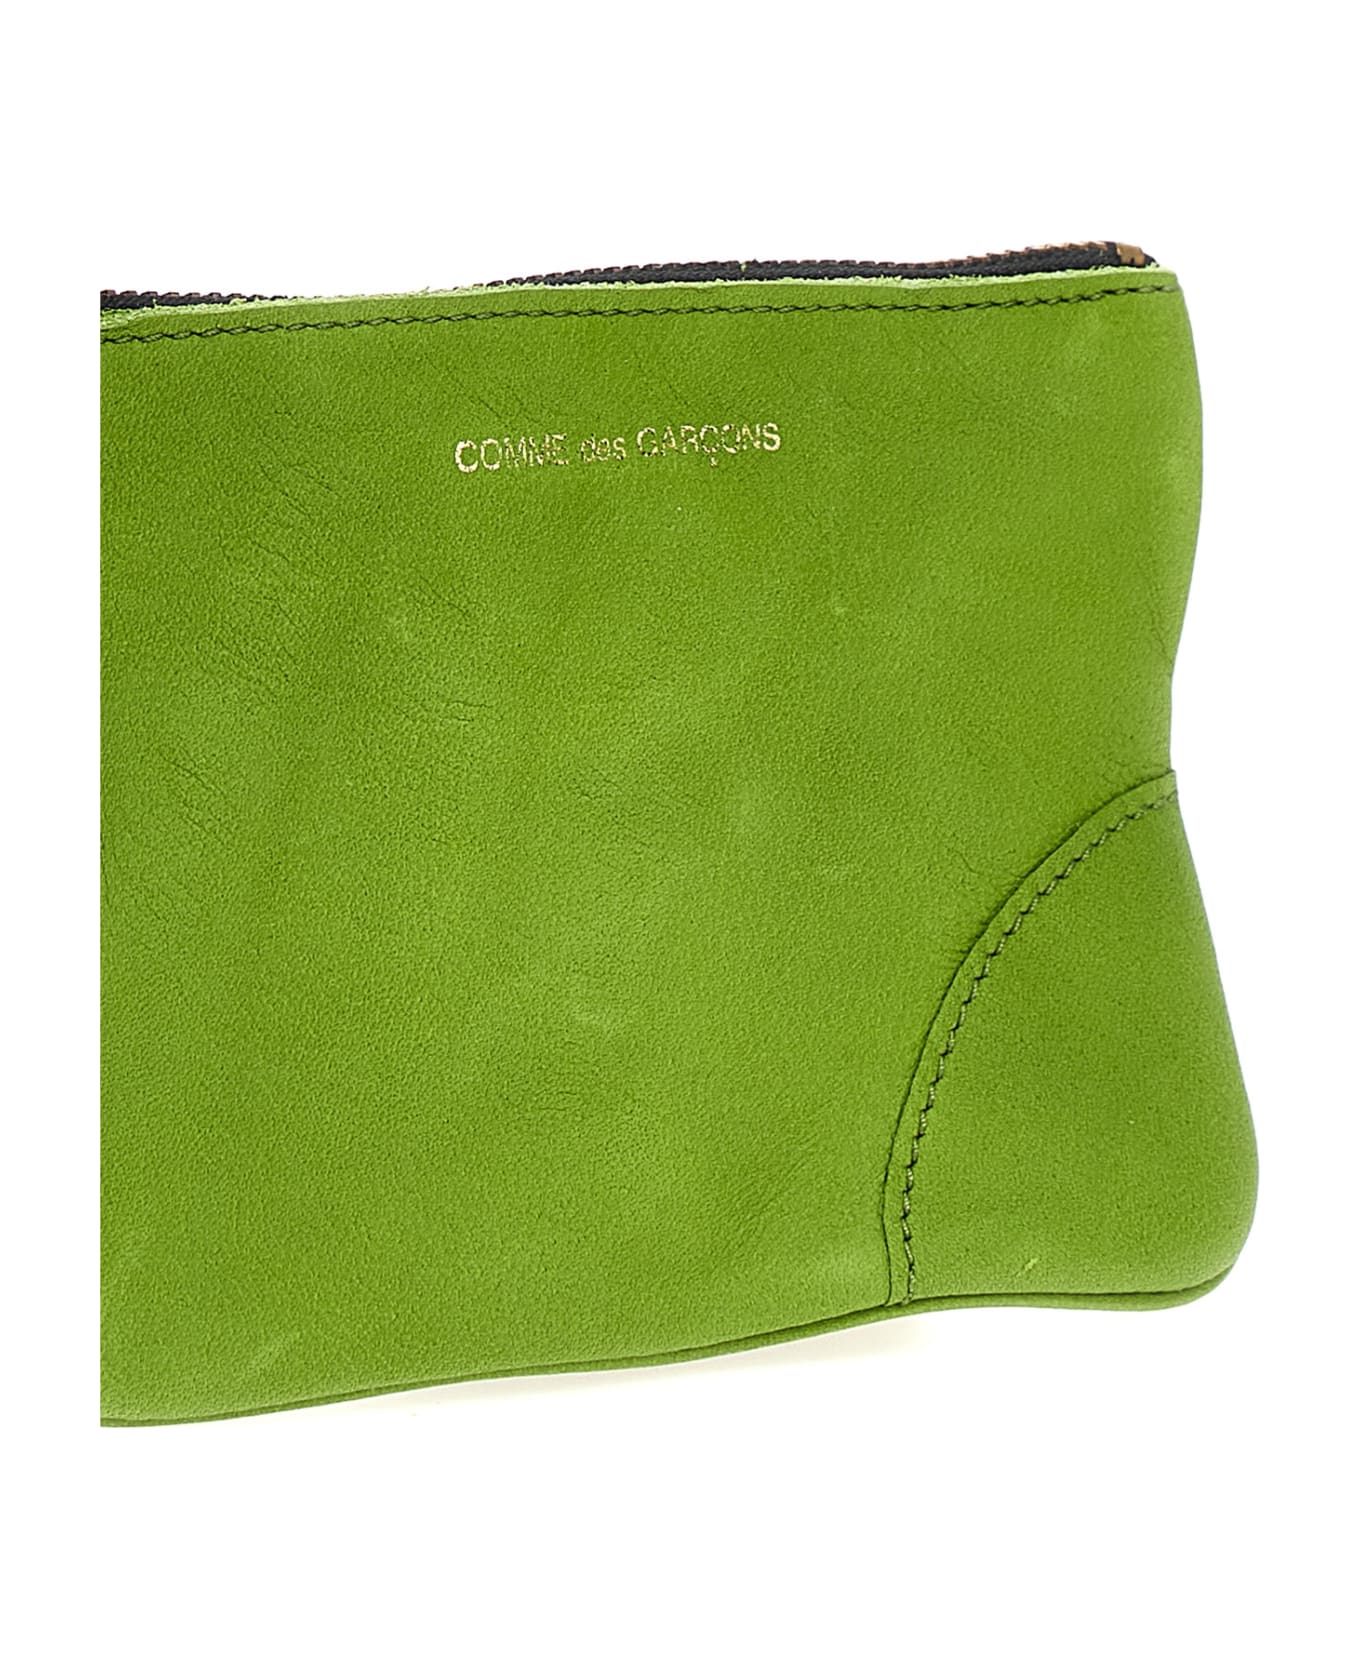 Comme des Garçons Wallet 'washed' Wallet - Green